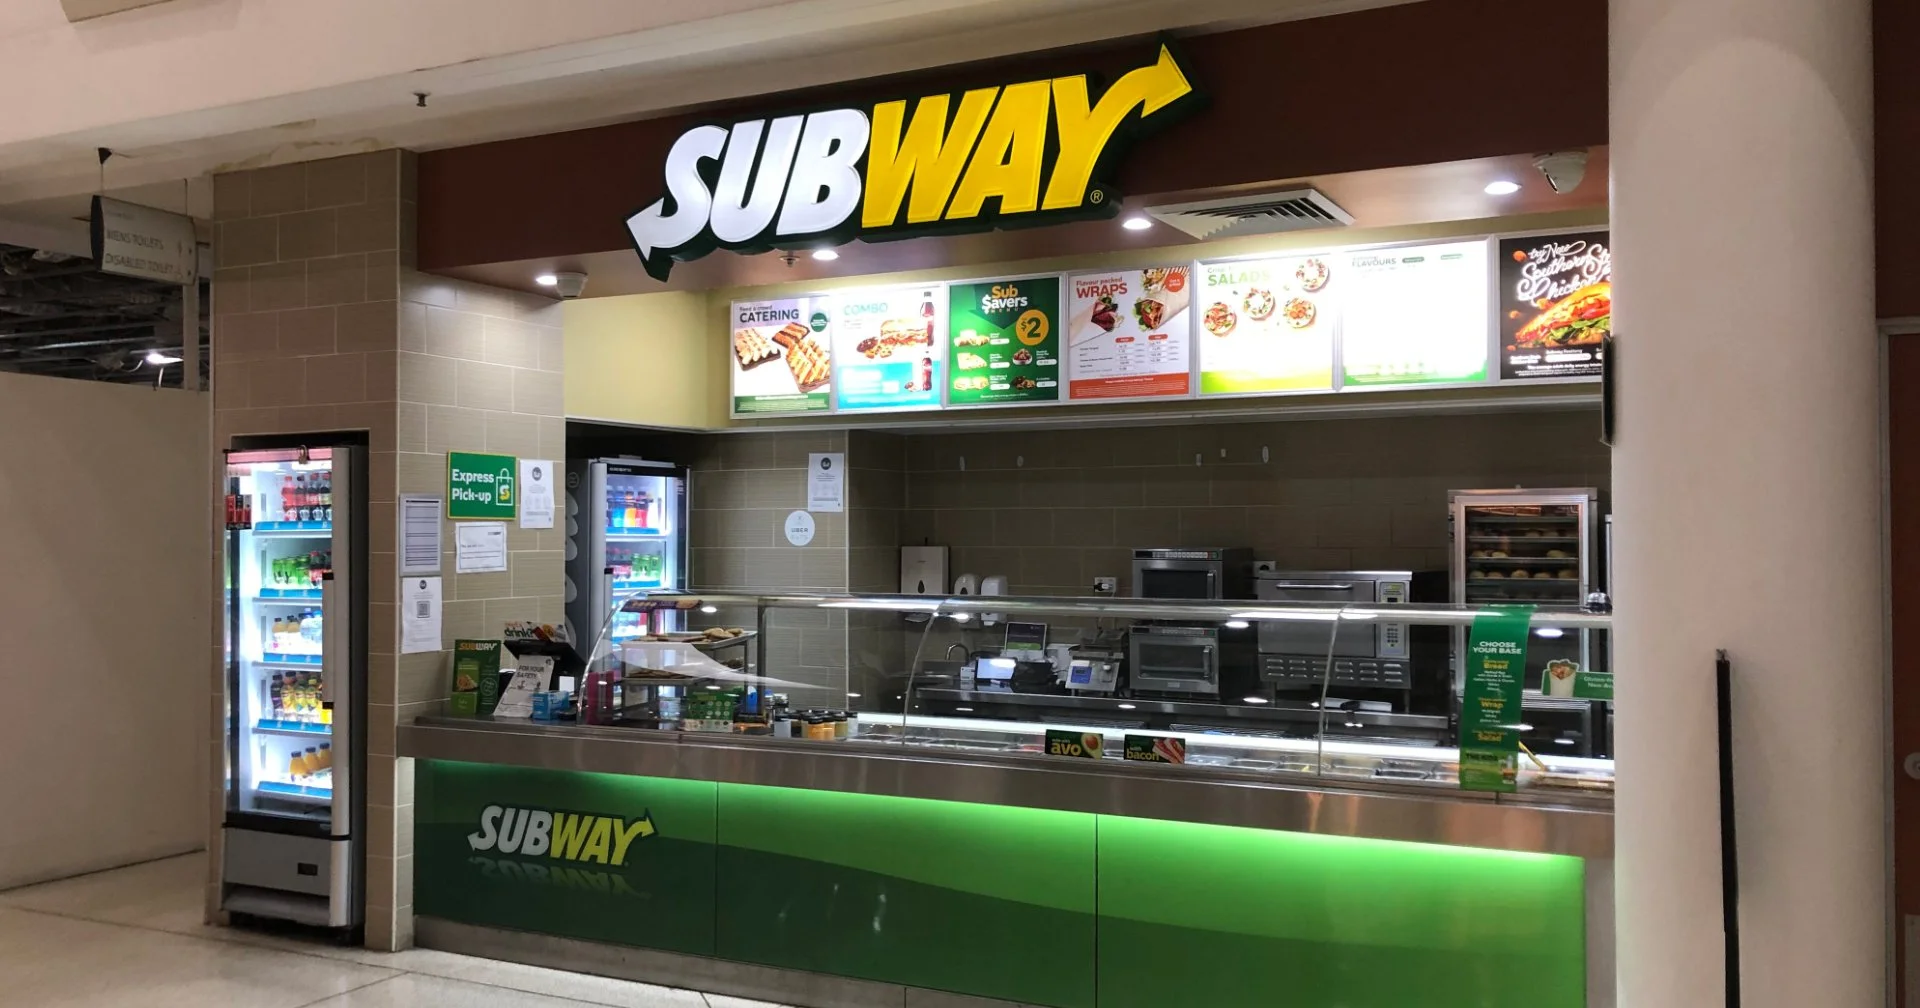 Subway ขายดีแล้วทำไม? ต้องขายกิจการ